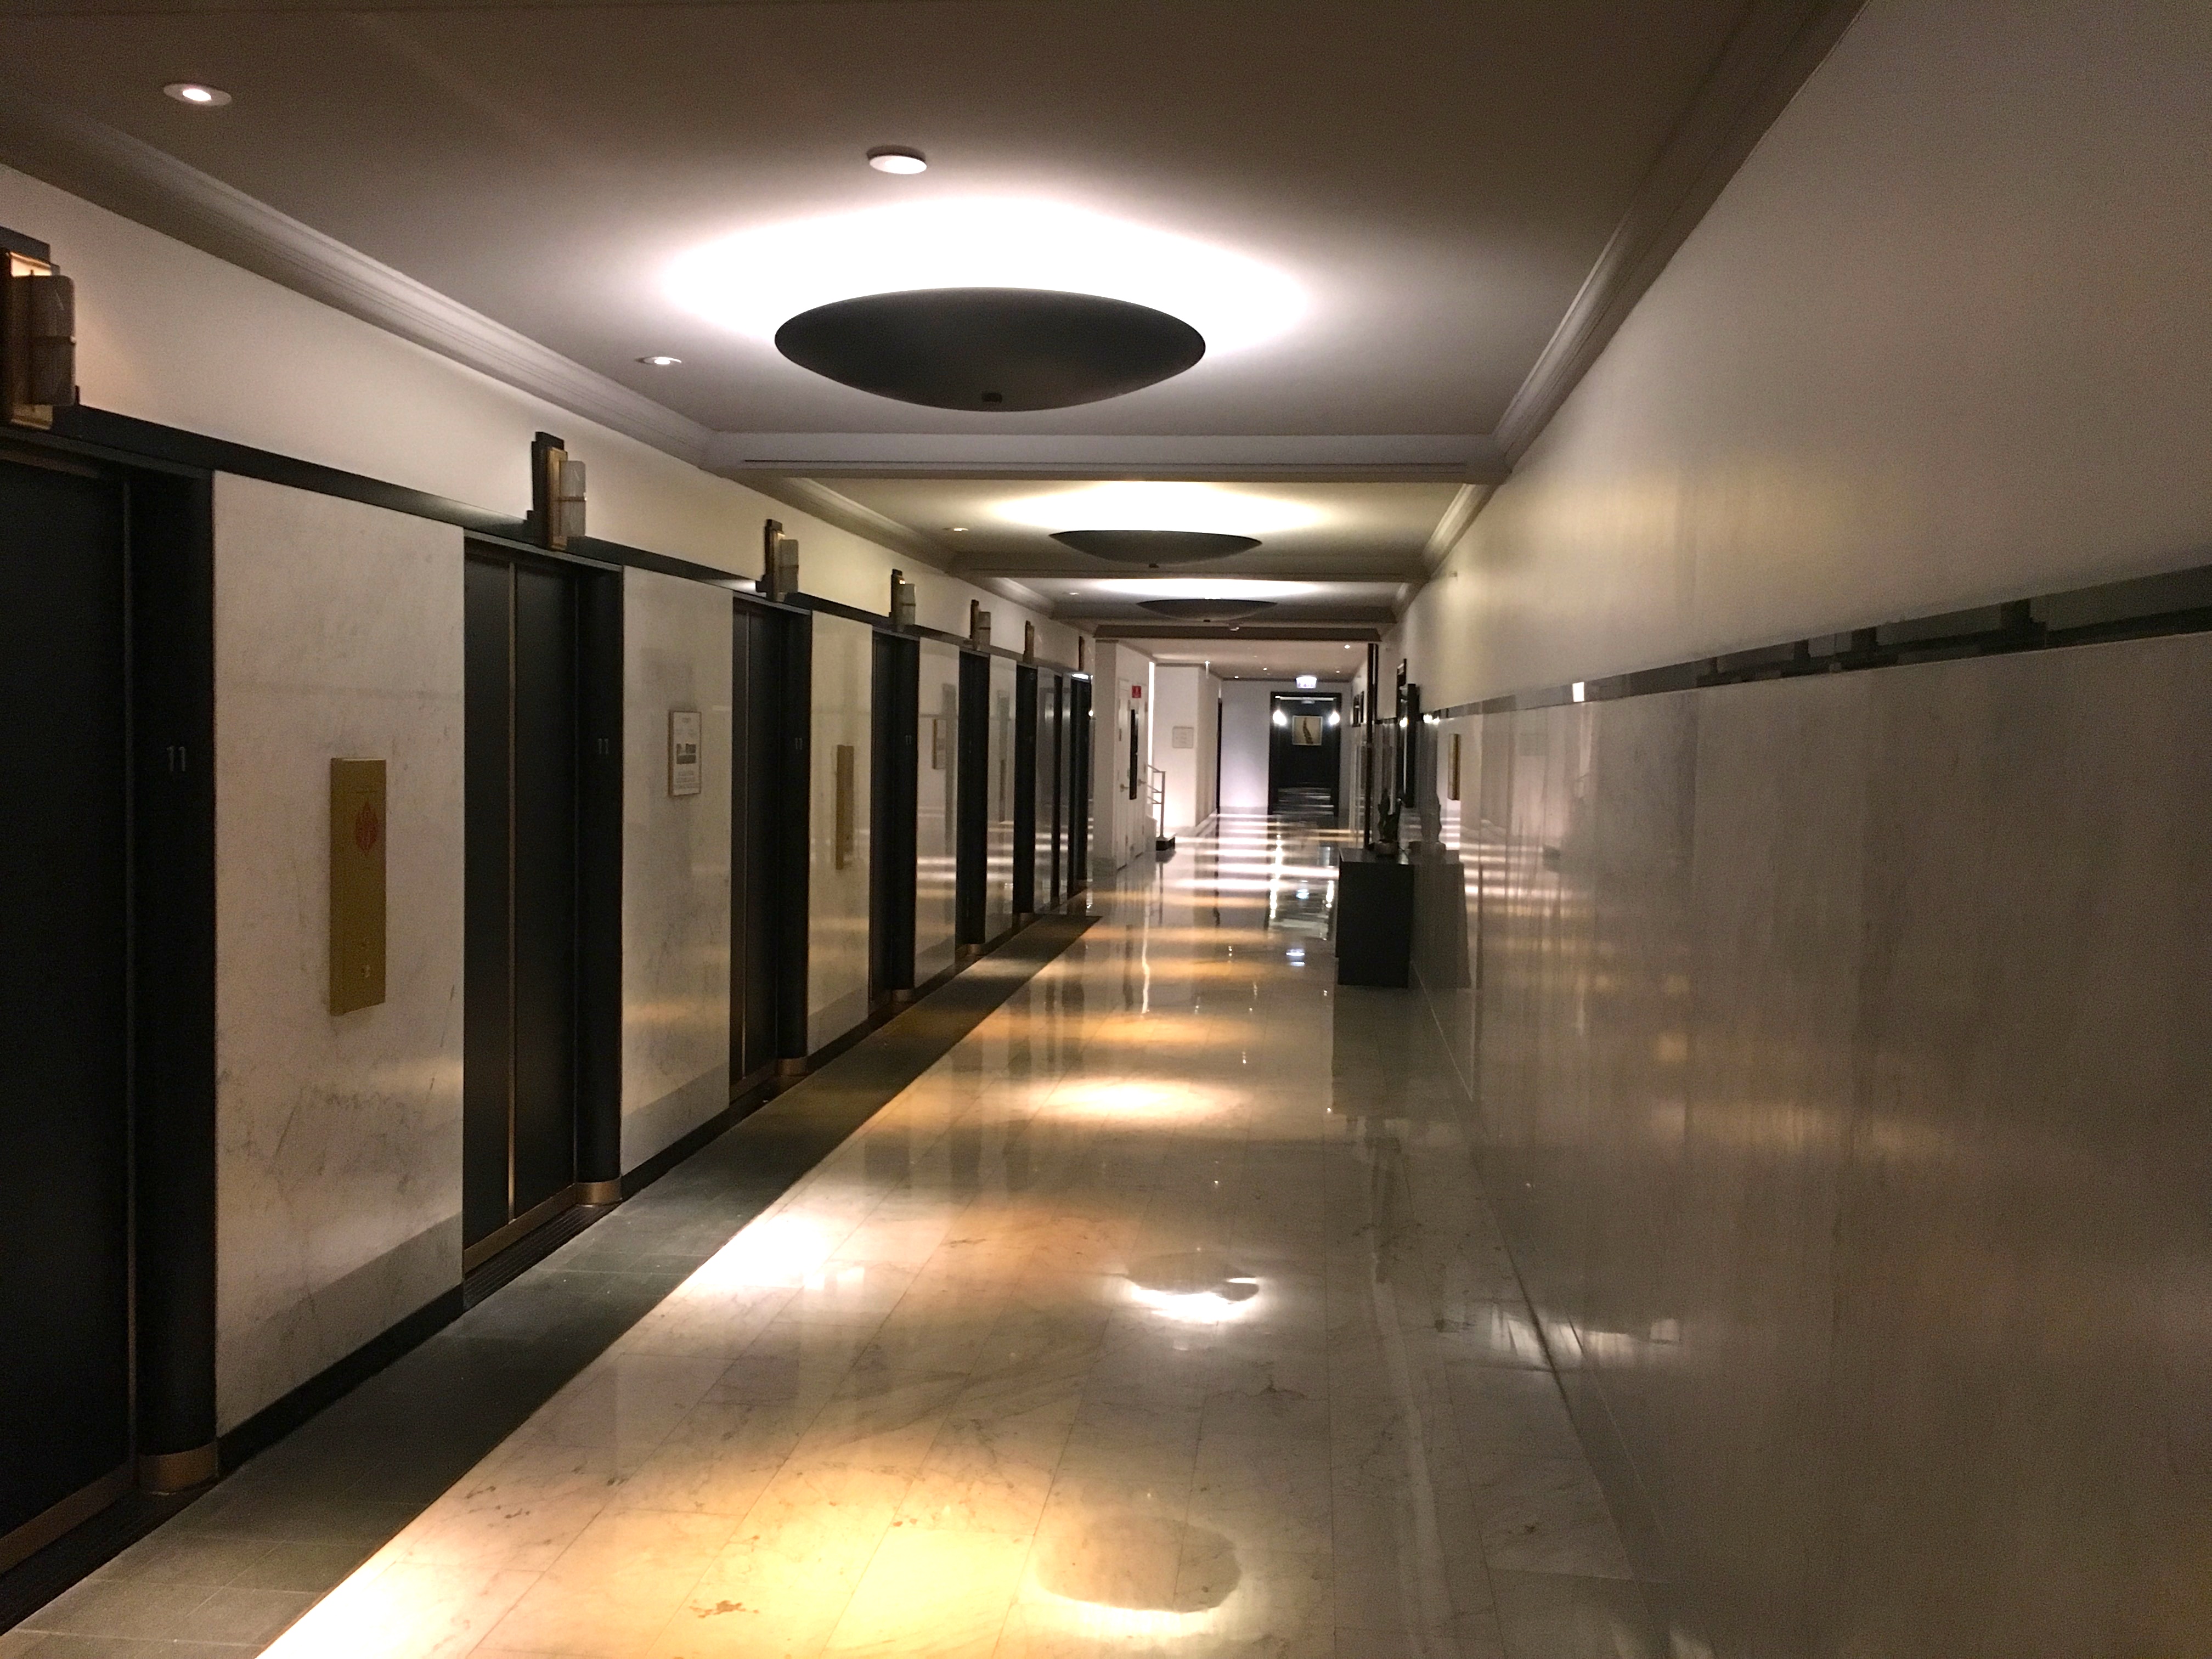 a hallway with elevator doors